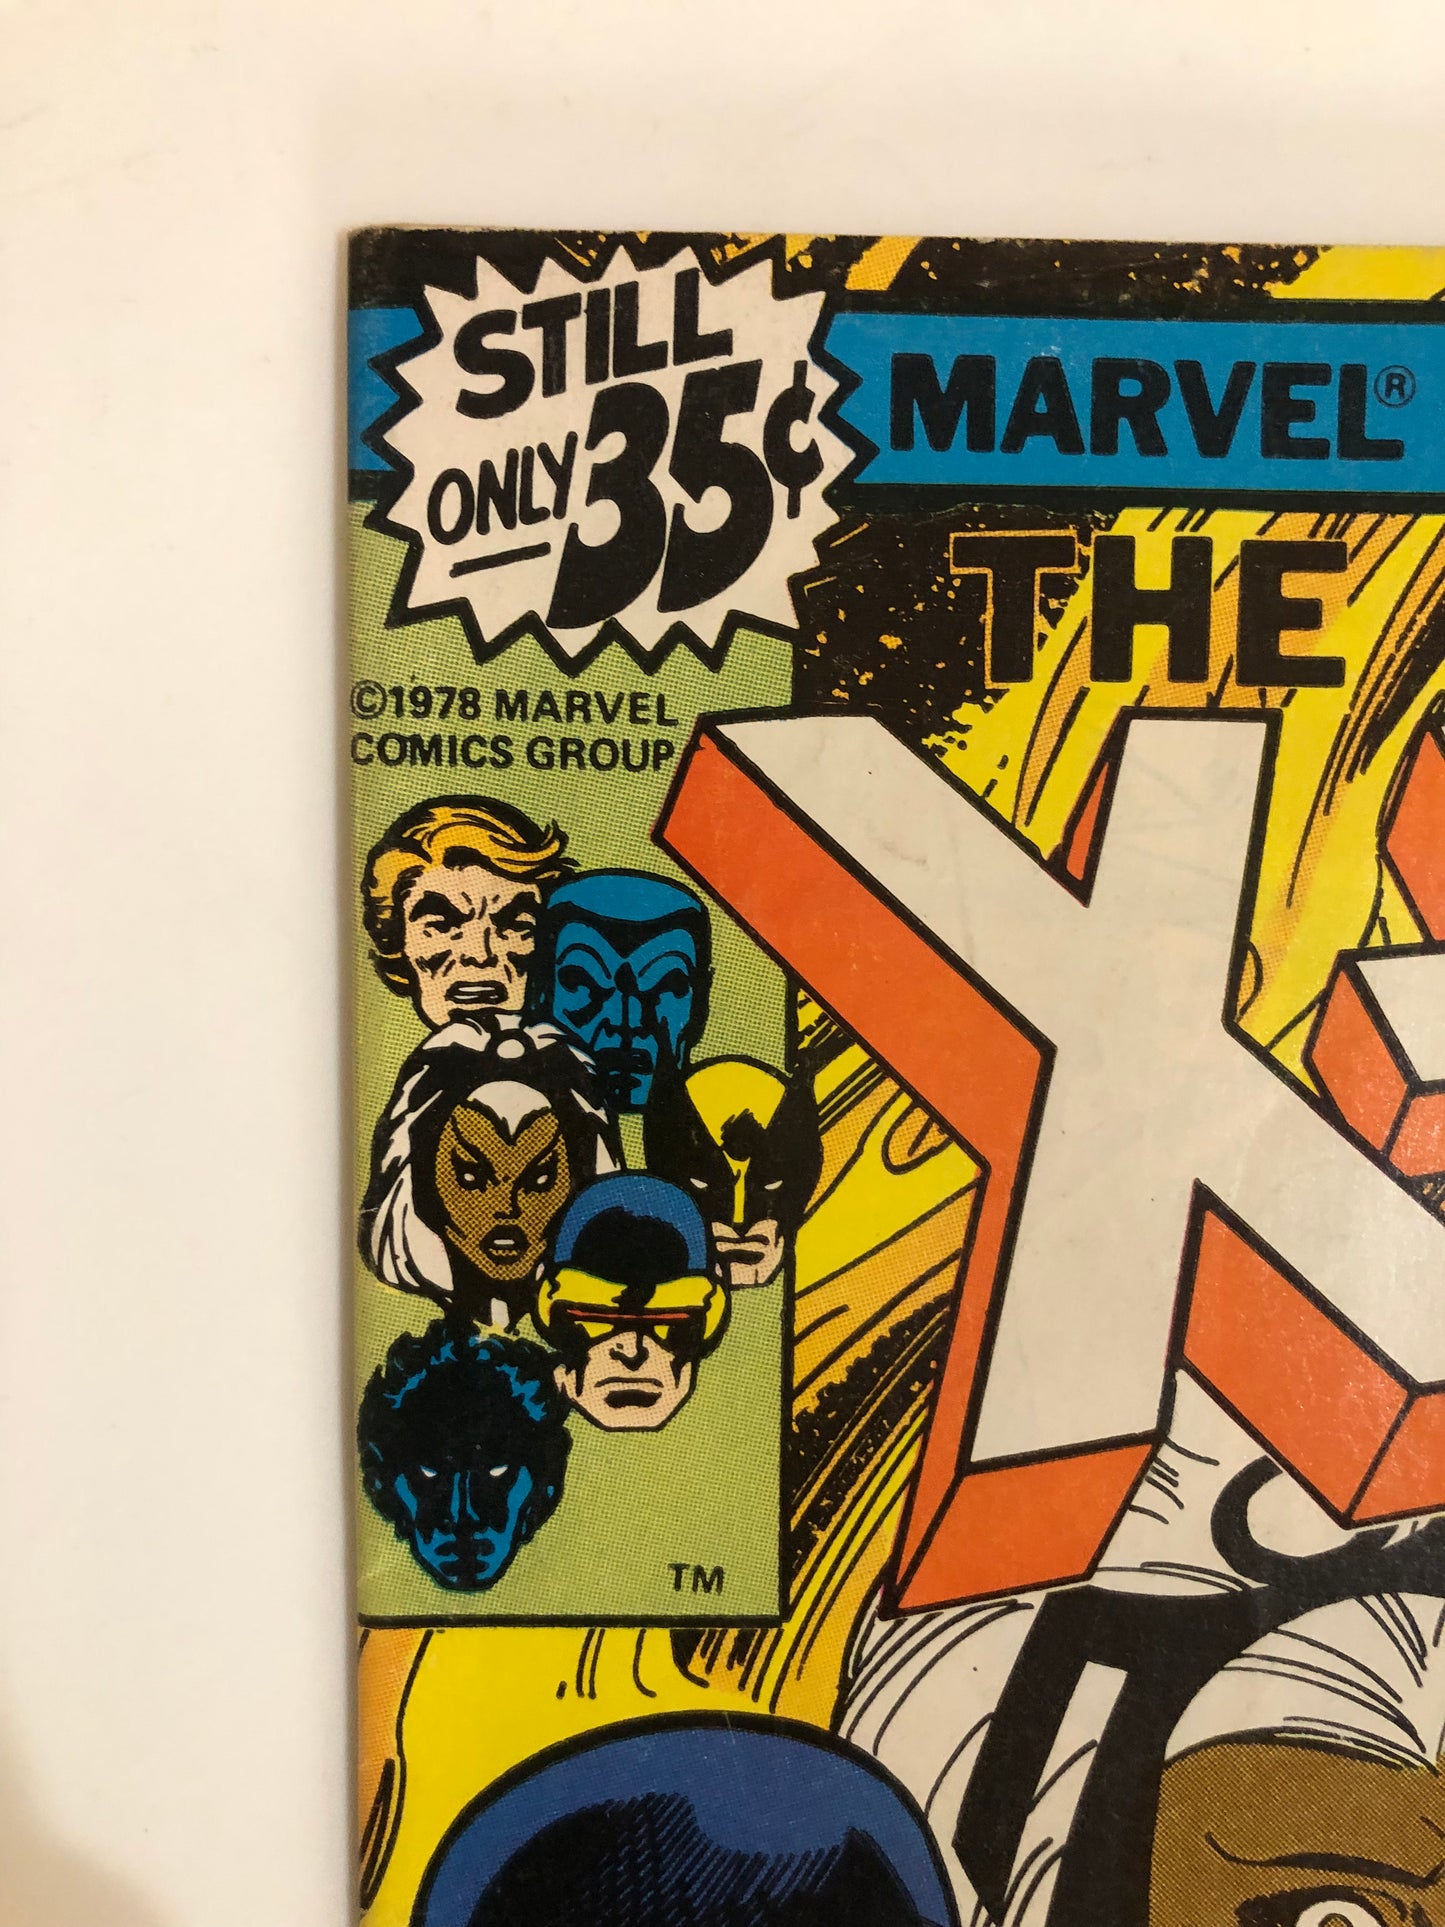 The Uncanny X-Men #117